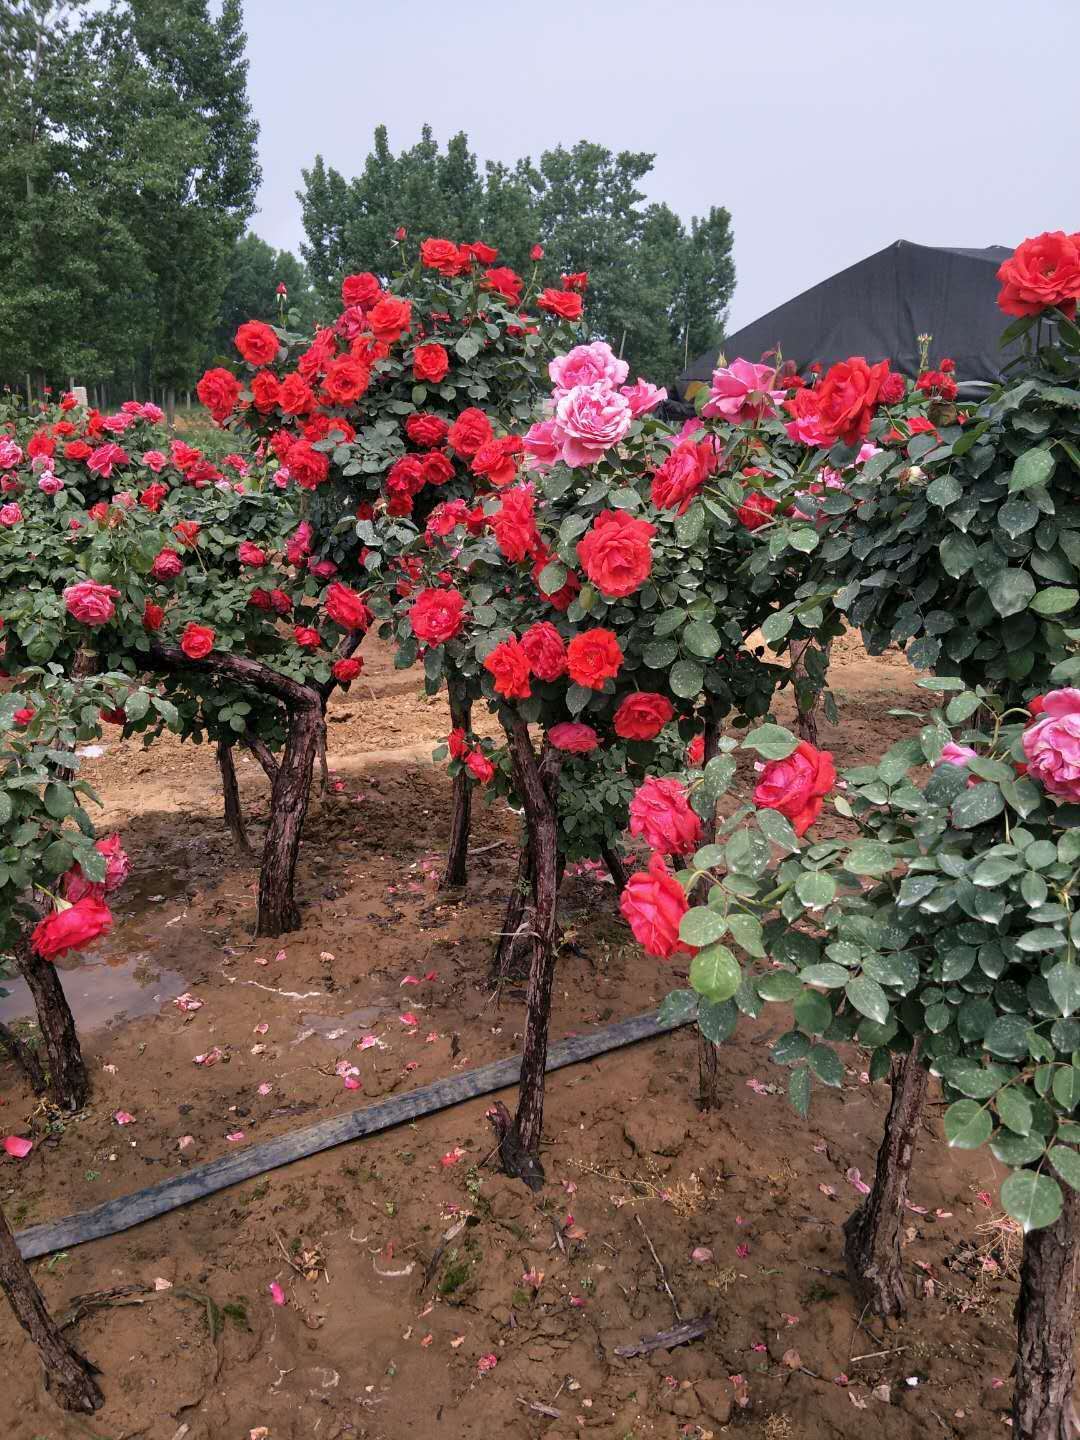 传奇玫瑰花厂家 传奇玫瑰花哪家好 云南传奇玫瑰花图片